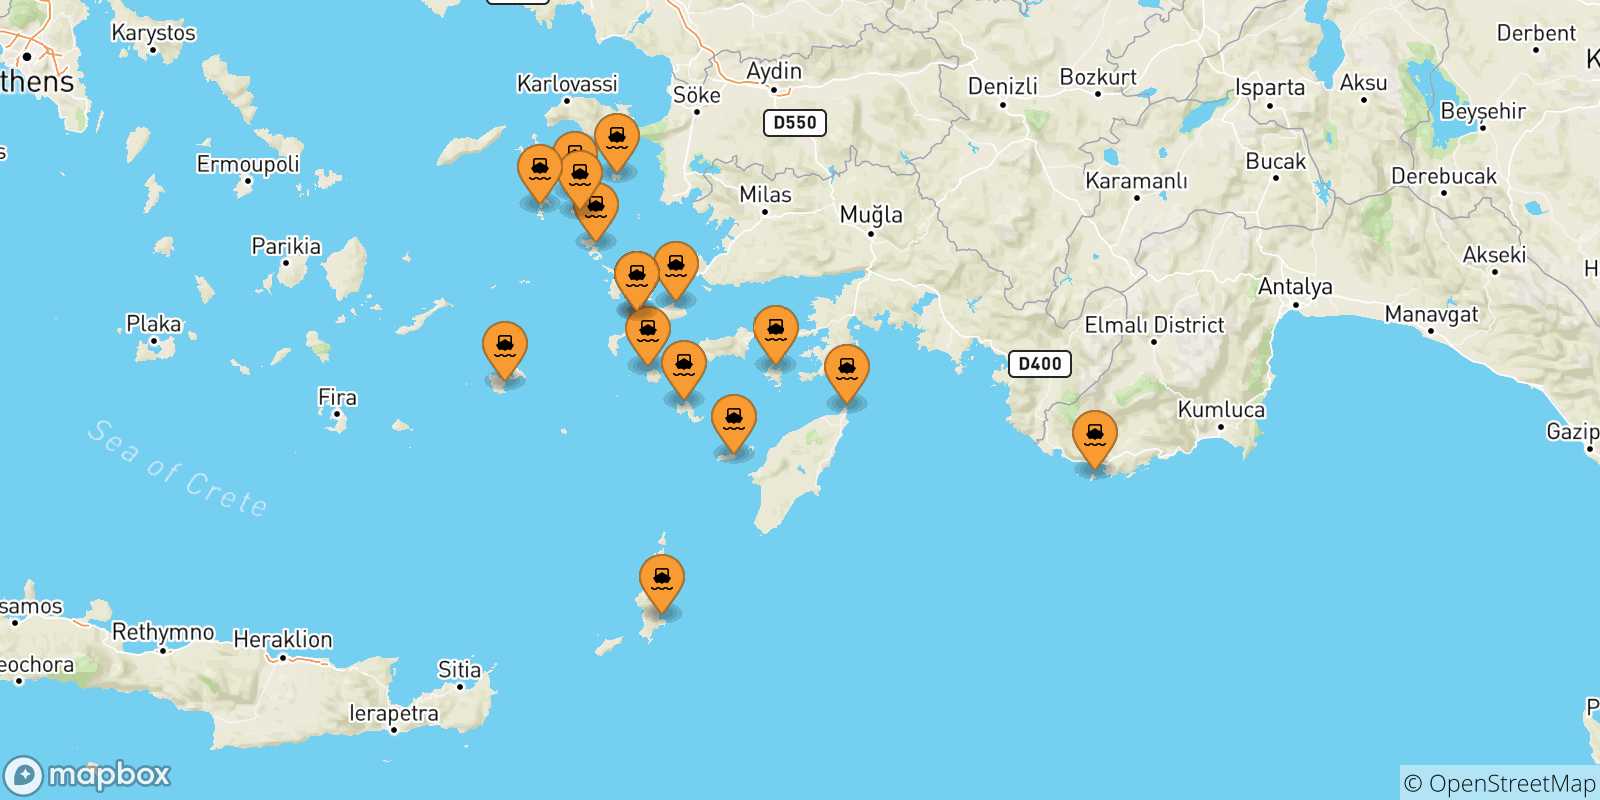 Mappa delle possibili rotte tra le Isole Dodecaneso e Kalymnos